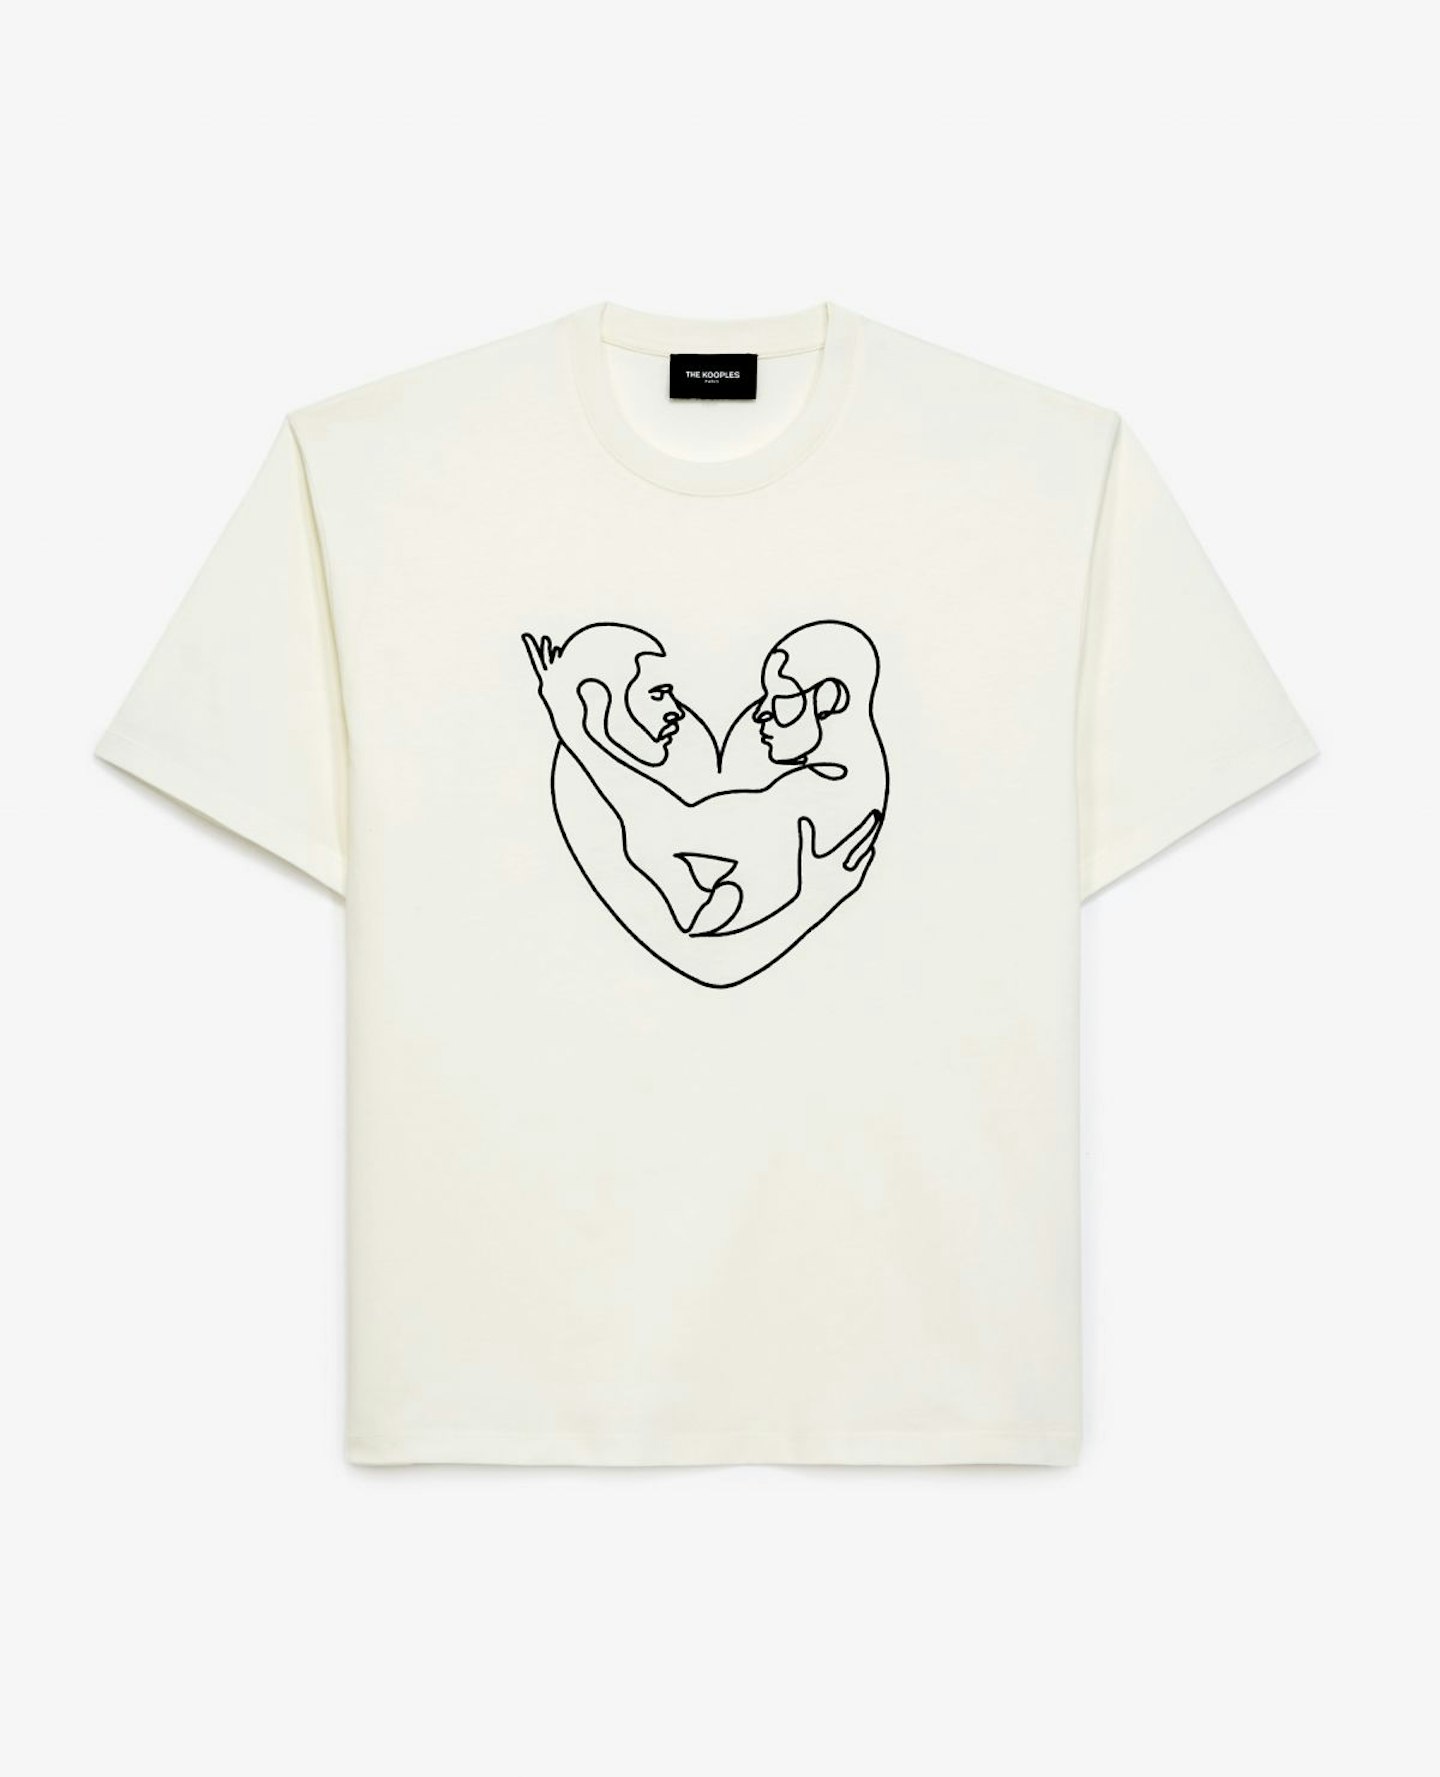 The Kooples x Clement Legrand, Ecru Cotton T-shirt, £70